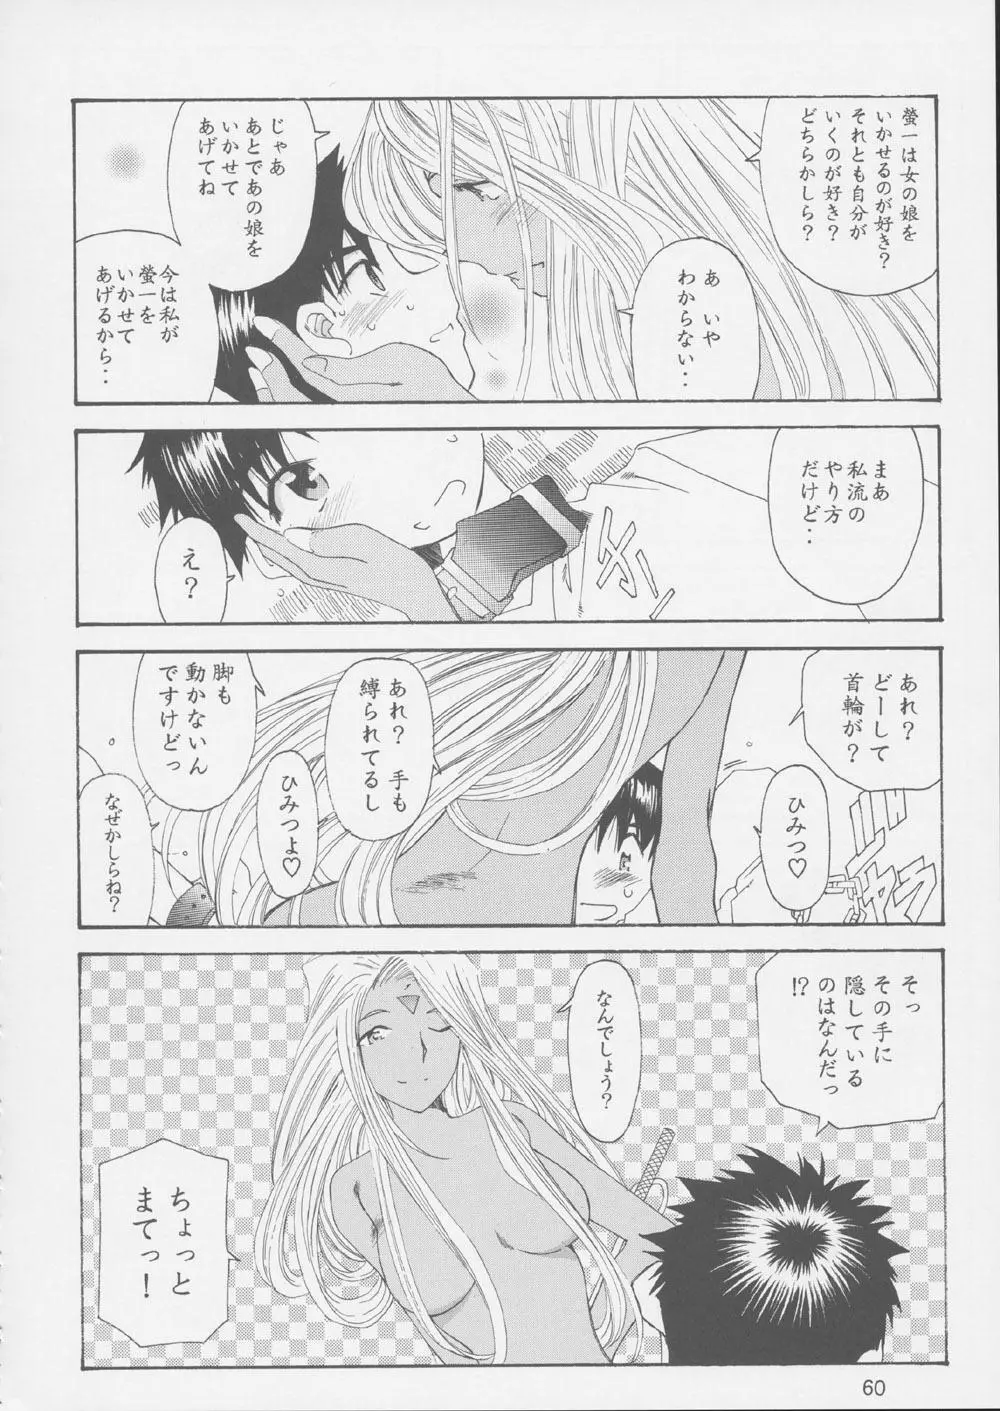 Fujishima Spirits 3 59ページ